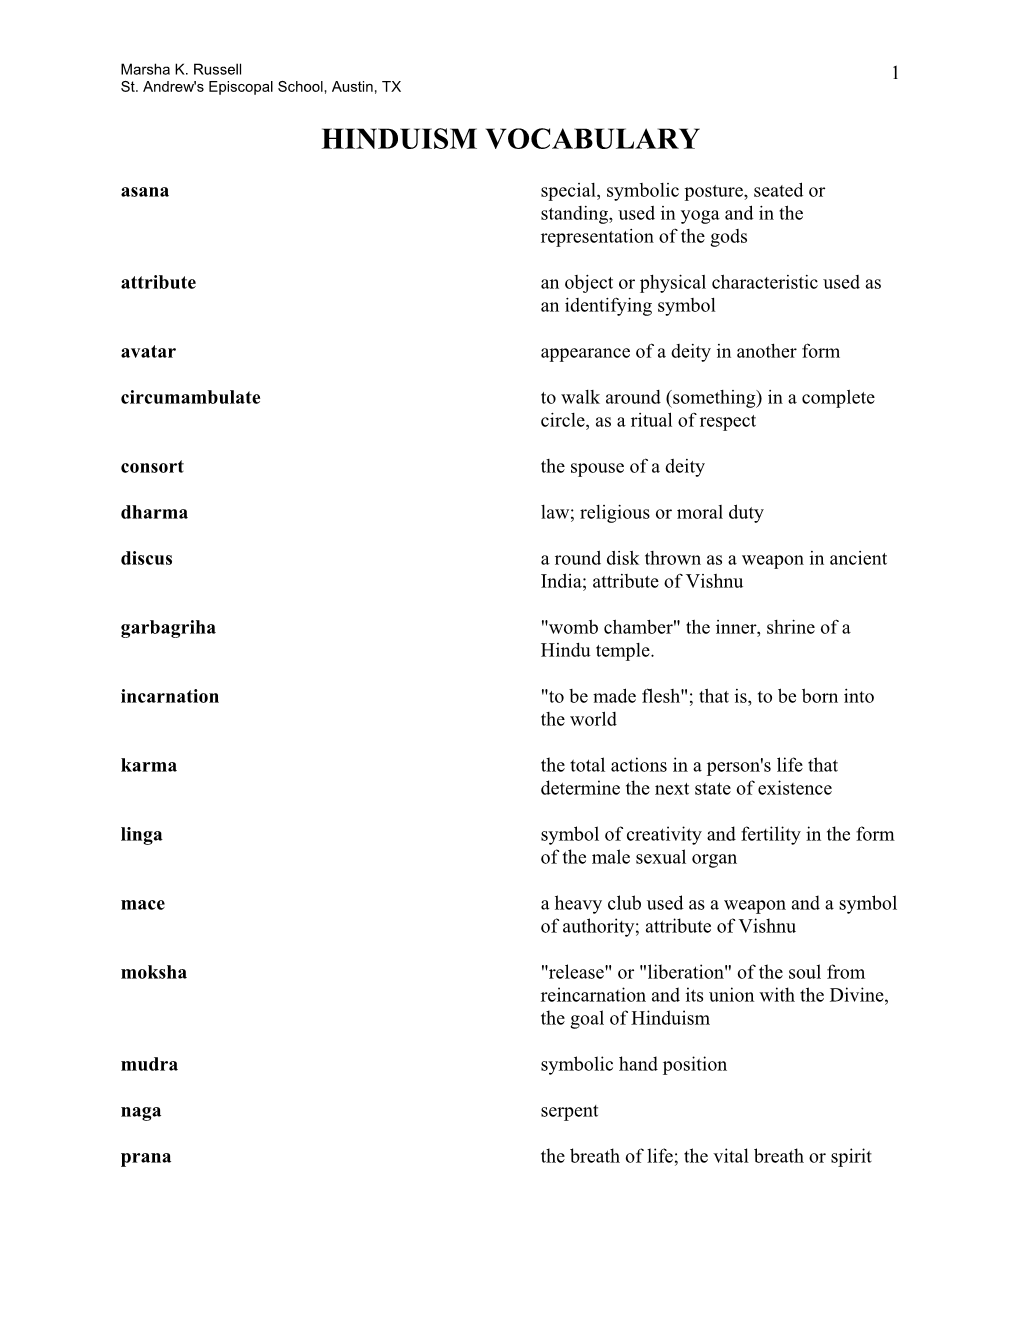 Hinduism Vocabulary